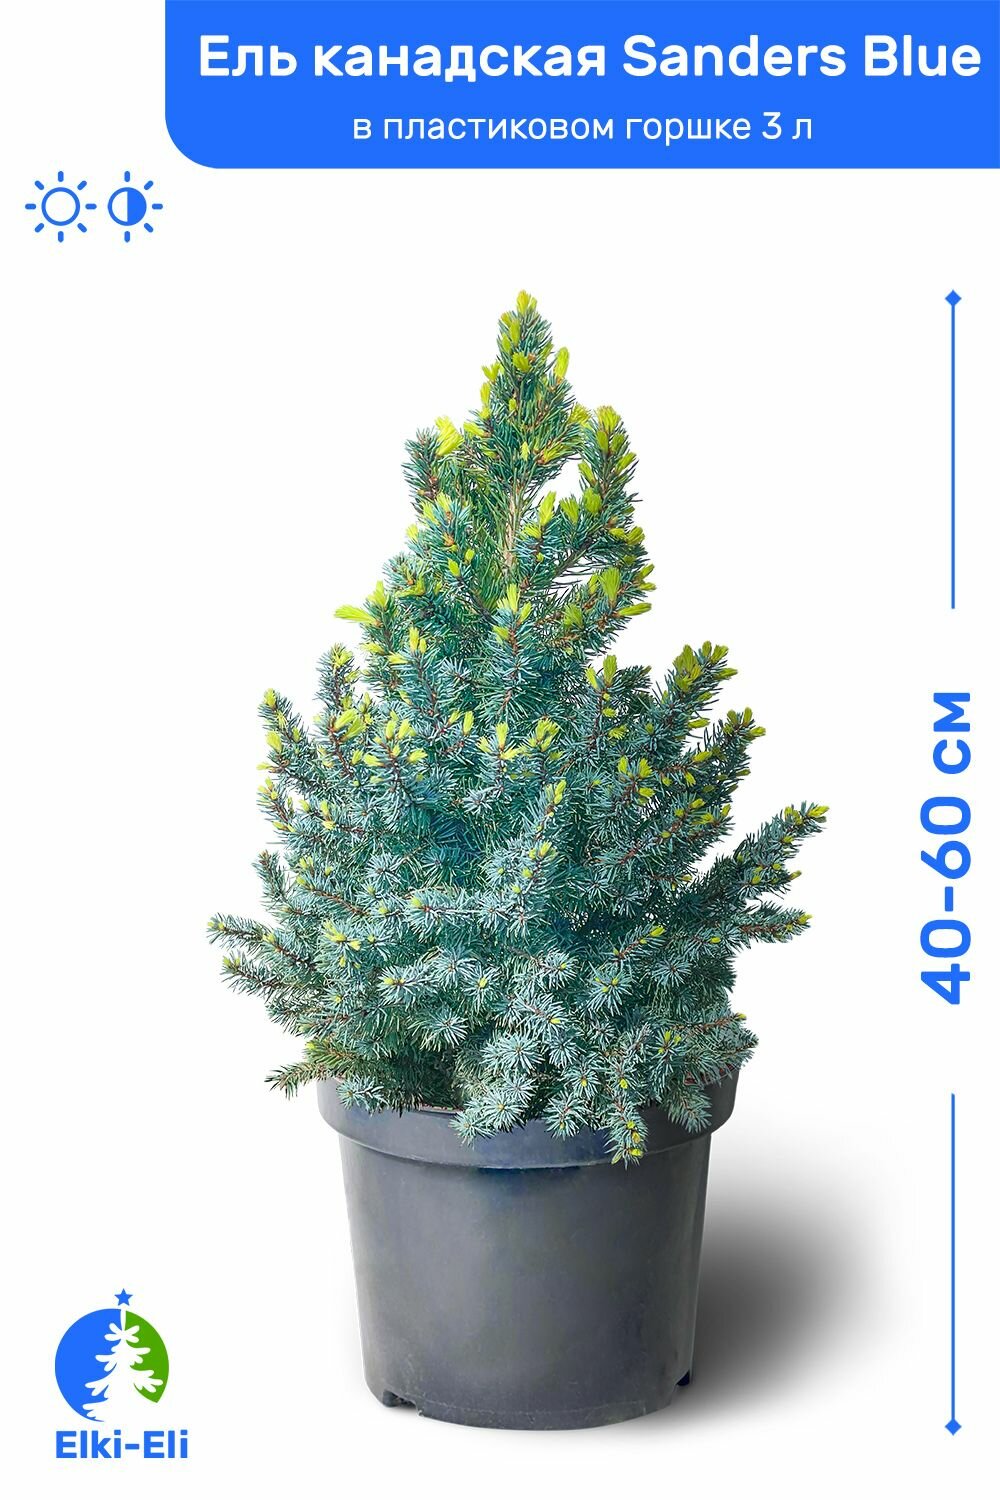 Ель канадская Sanders Blue (Сандерс Блю) 40-60 см в пластиковом горшке 3 л саженец хвойное живое растение